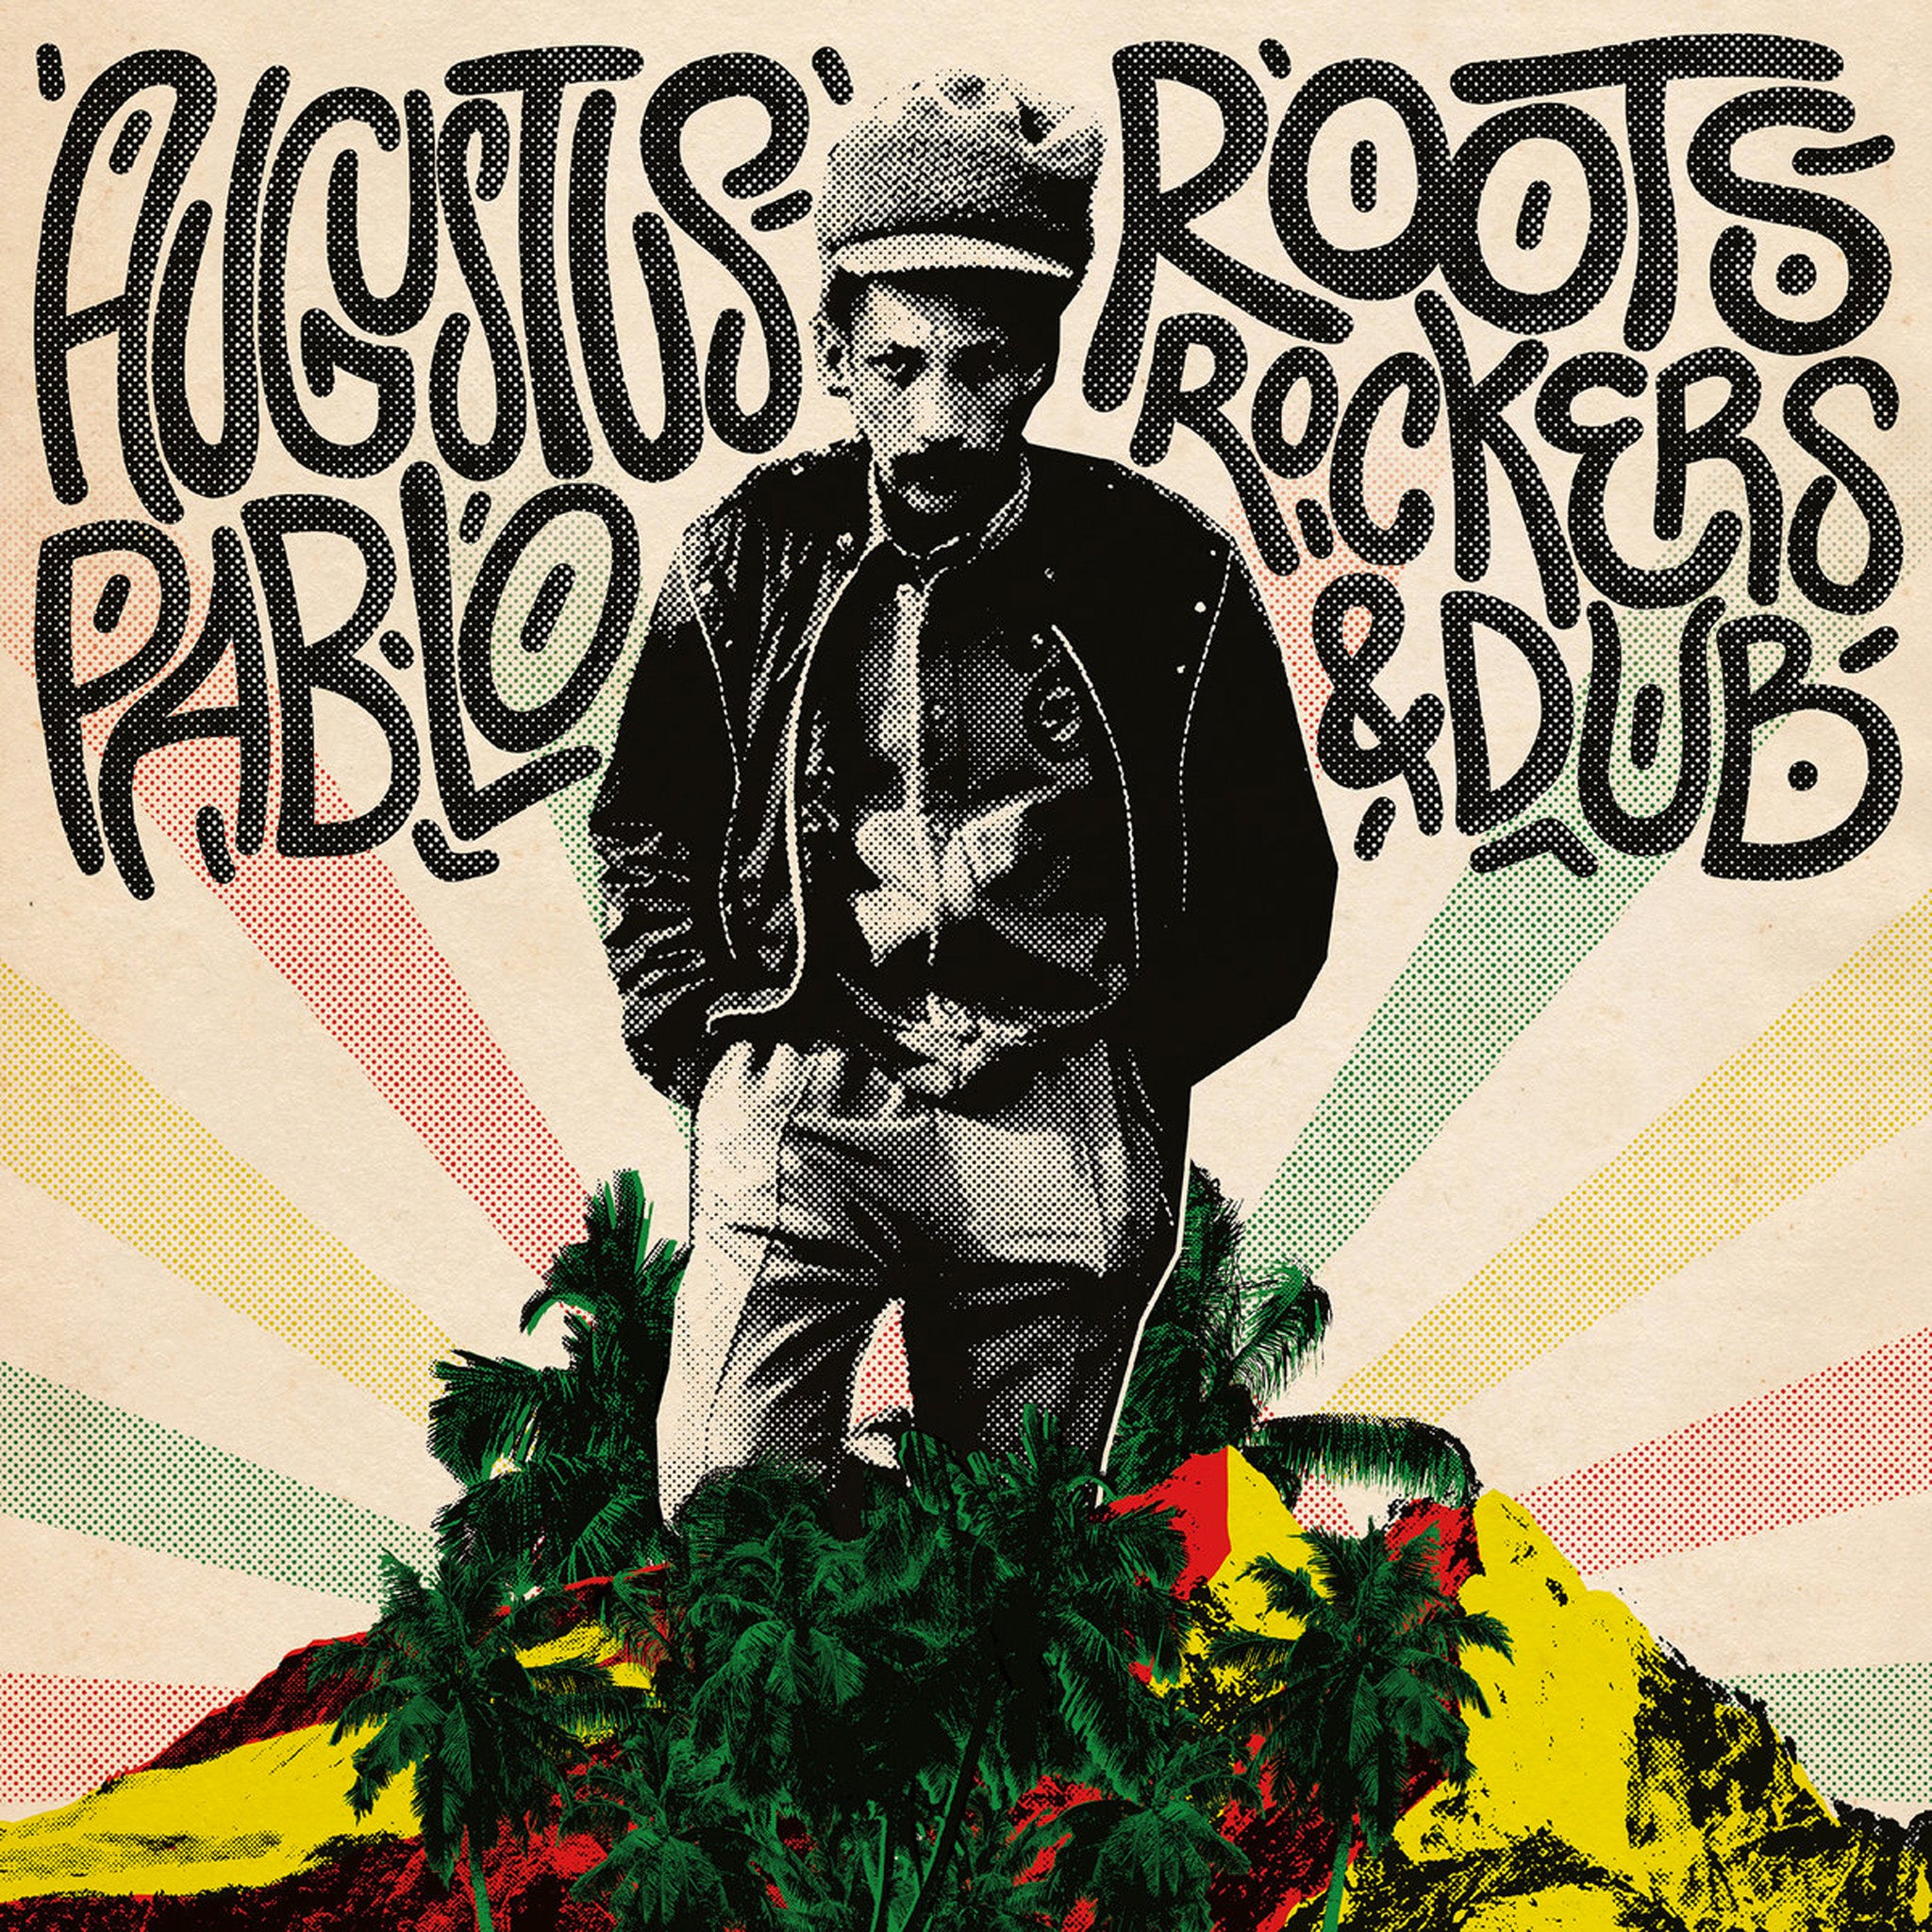 Augustus Pablo - &quot;Roots, Rockers, &amp; Dub&quot; LP (Vinyl) - August Shop